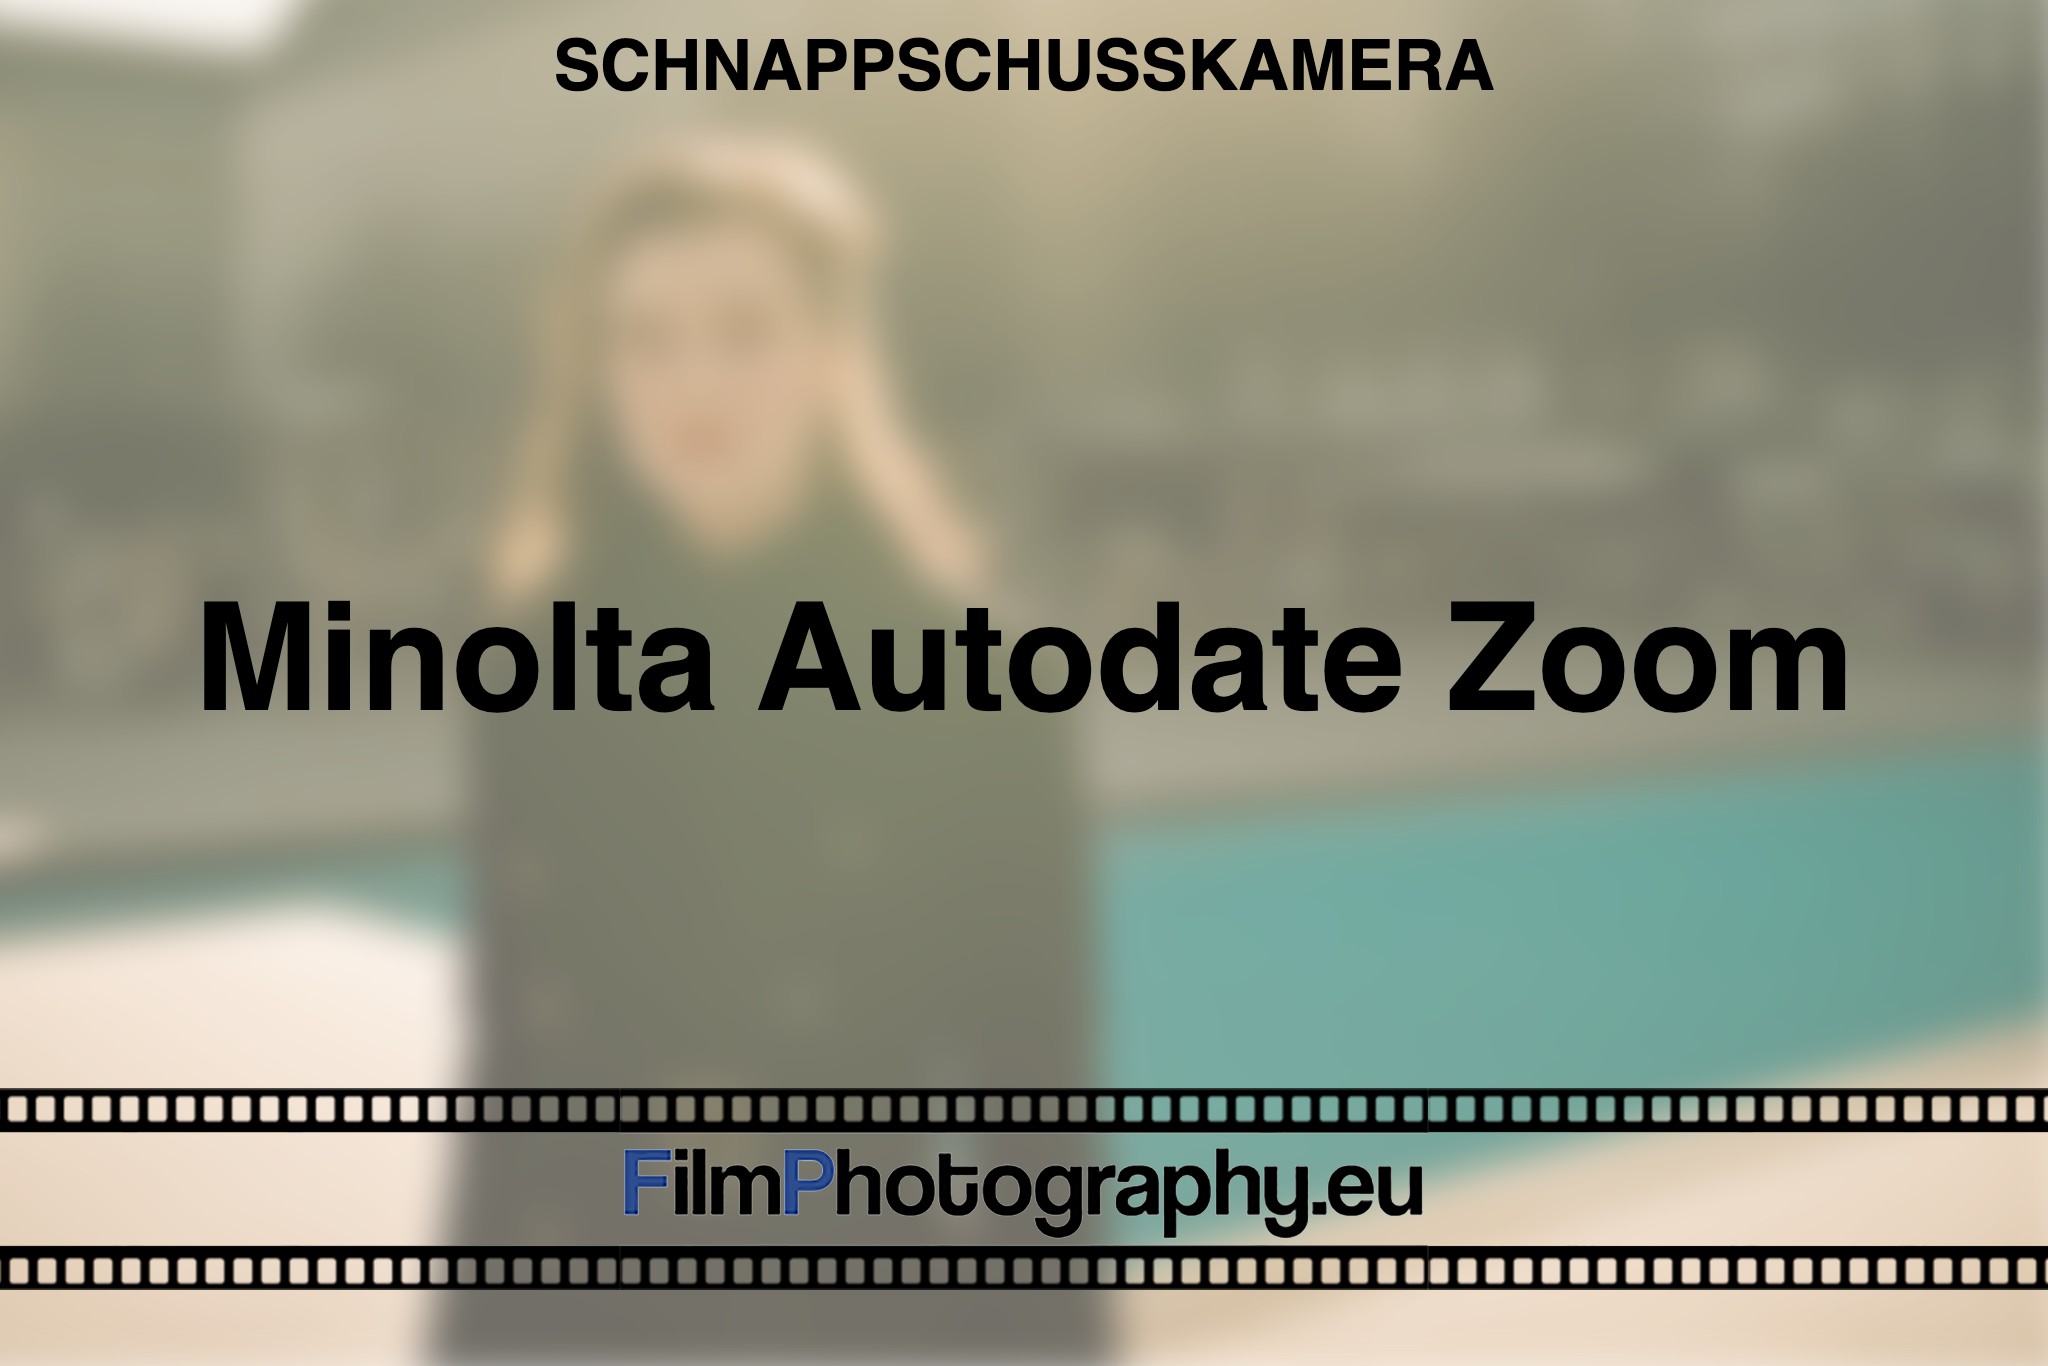 minolta-autodate-zoom-schnappschusskamera-bnv